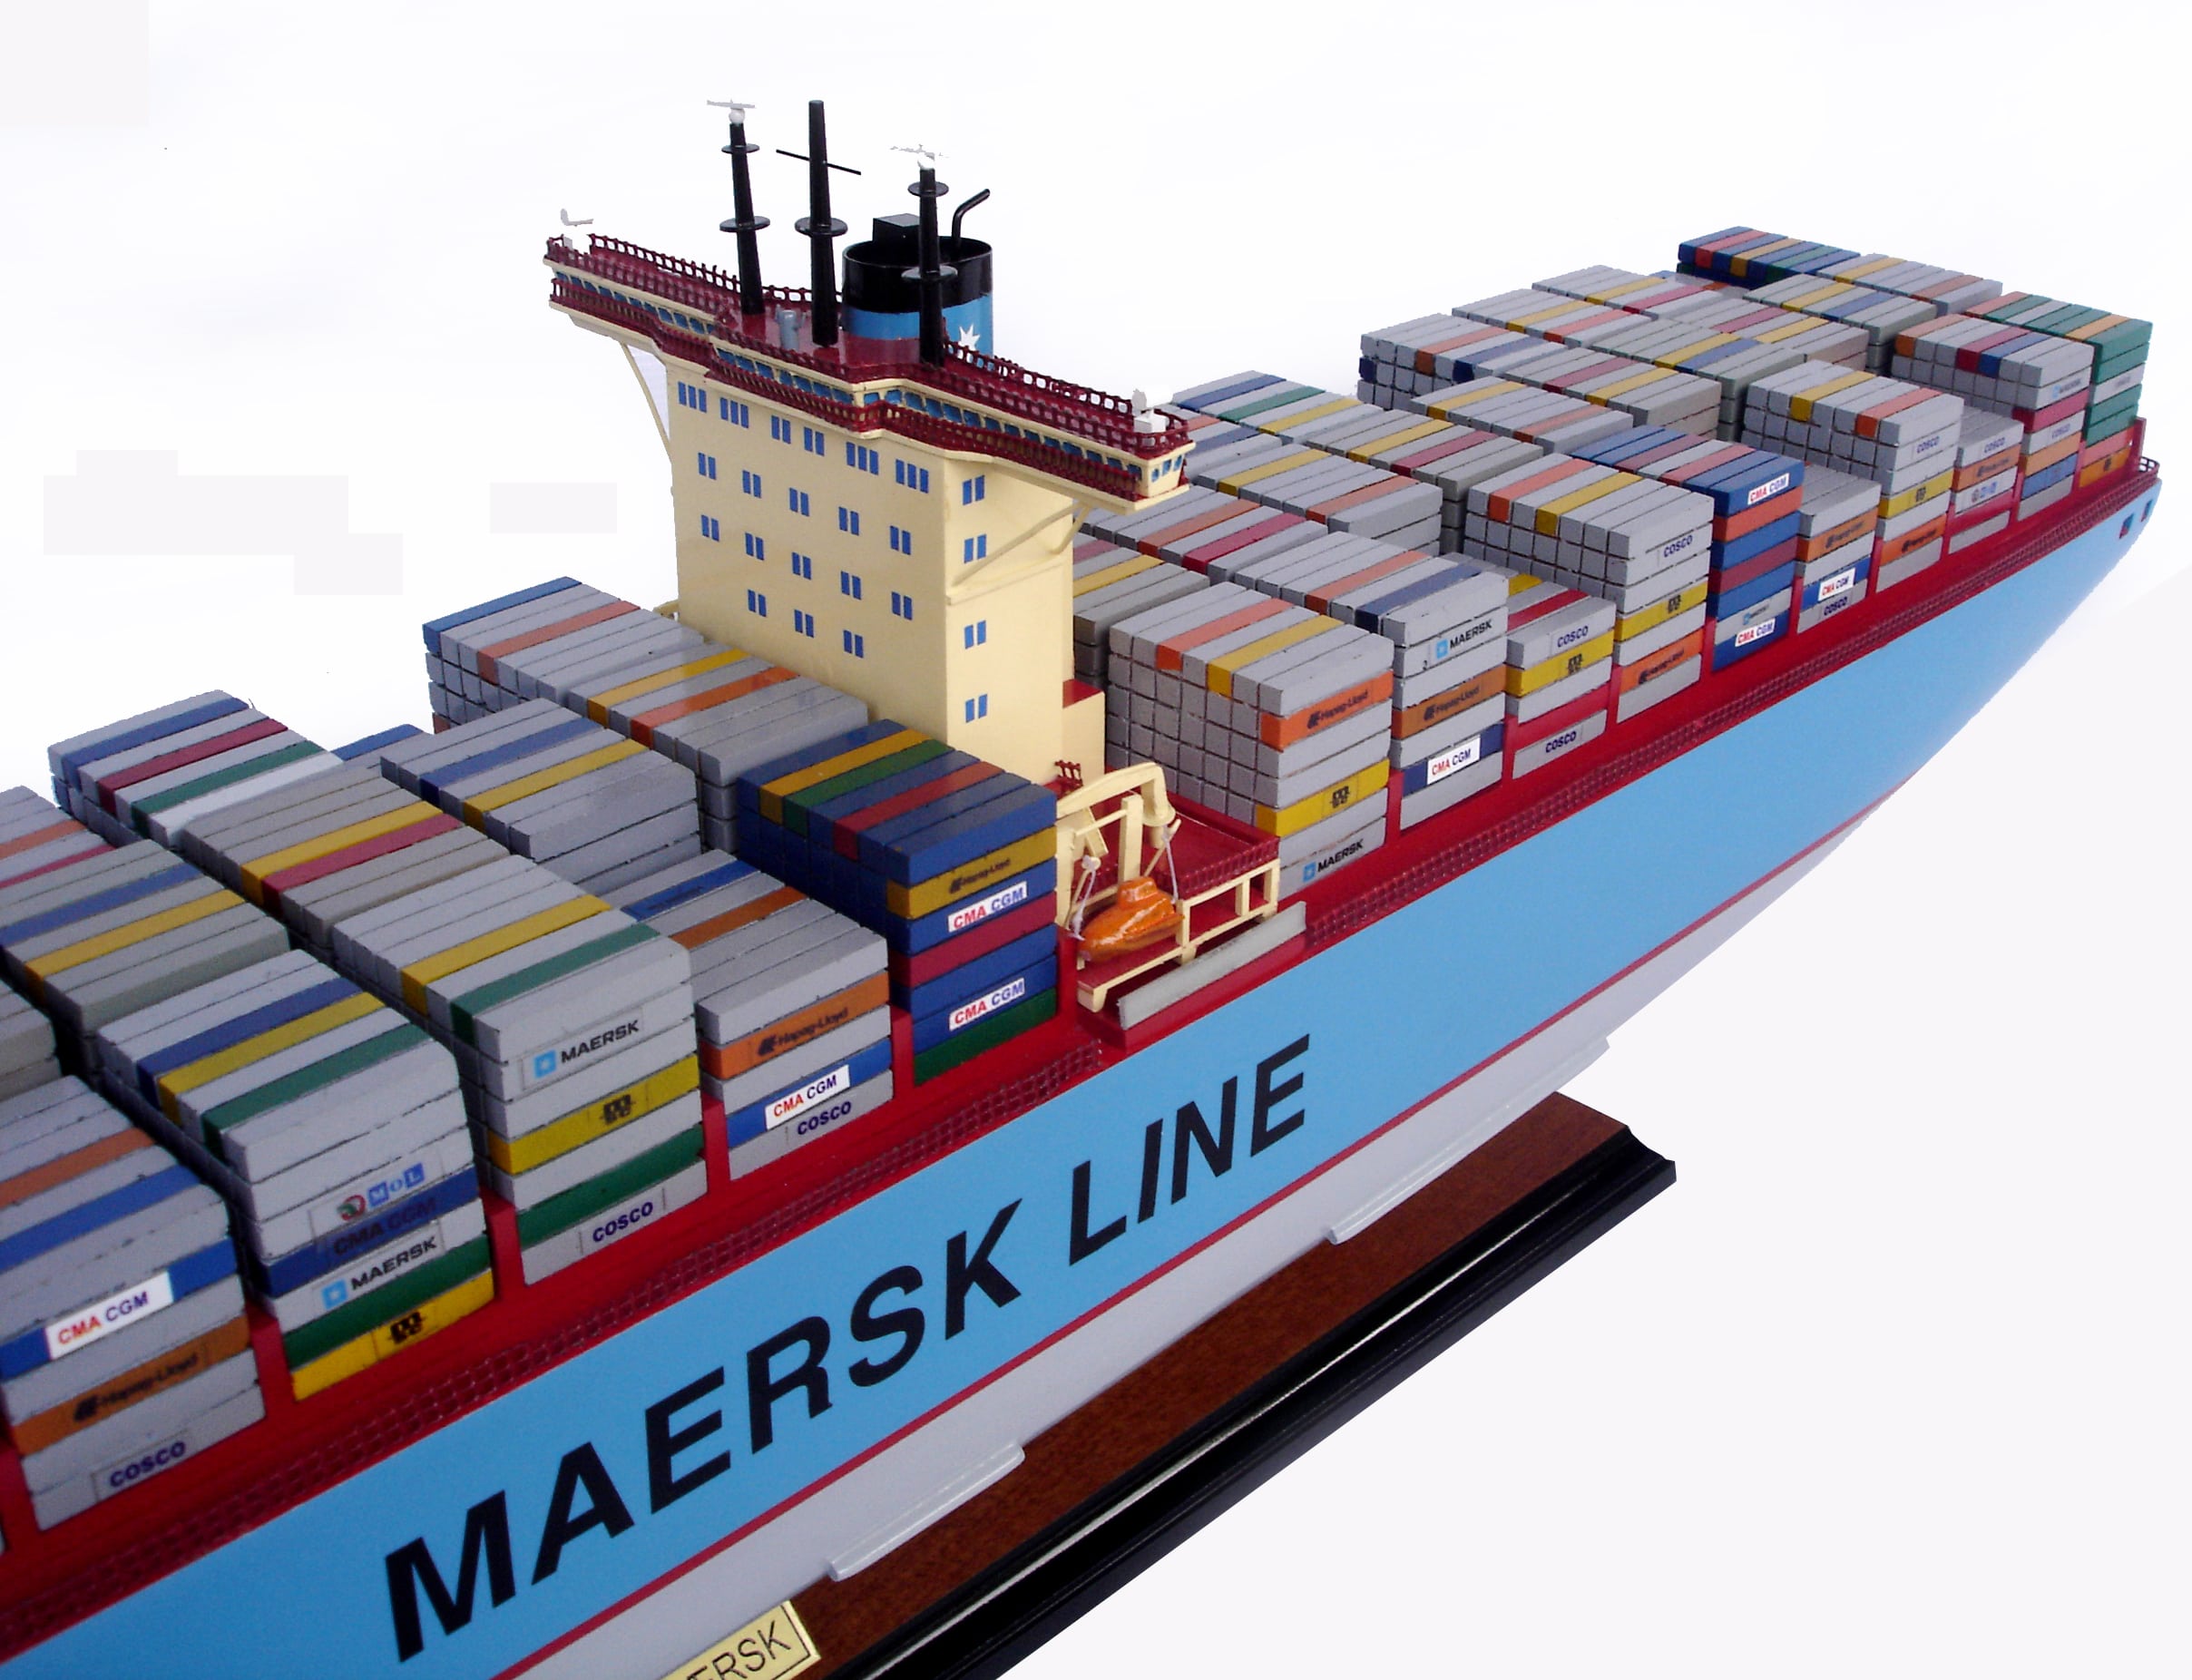 Emma Maersk Model Ship (with lights) - GN